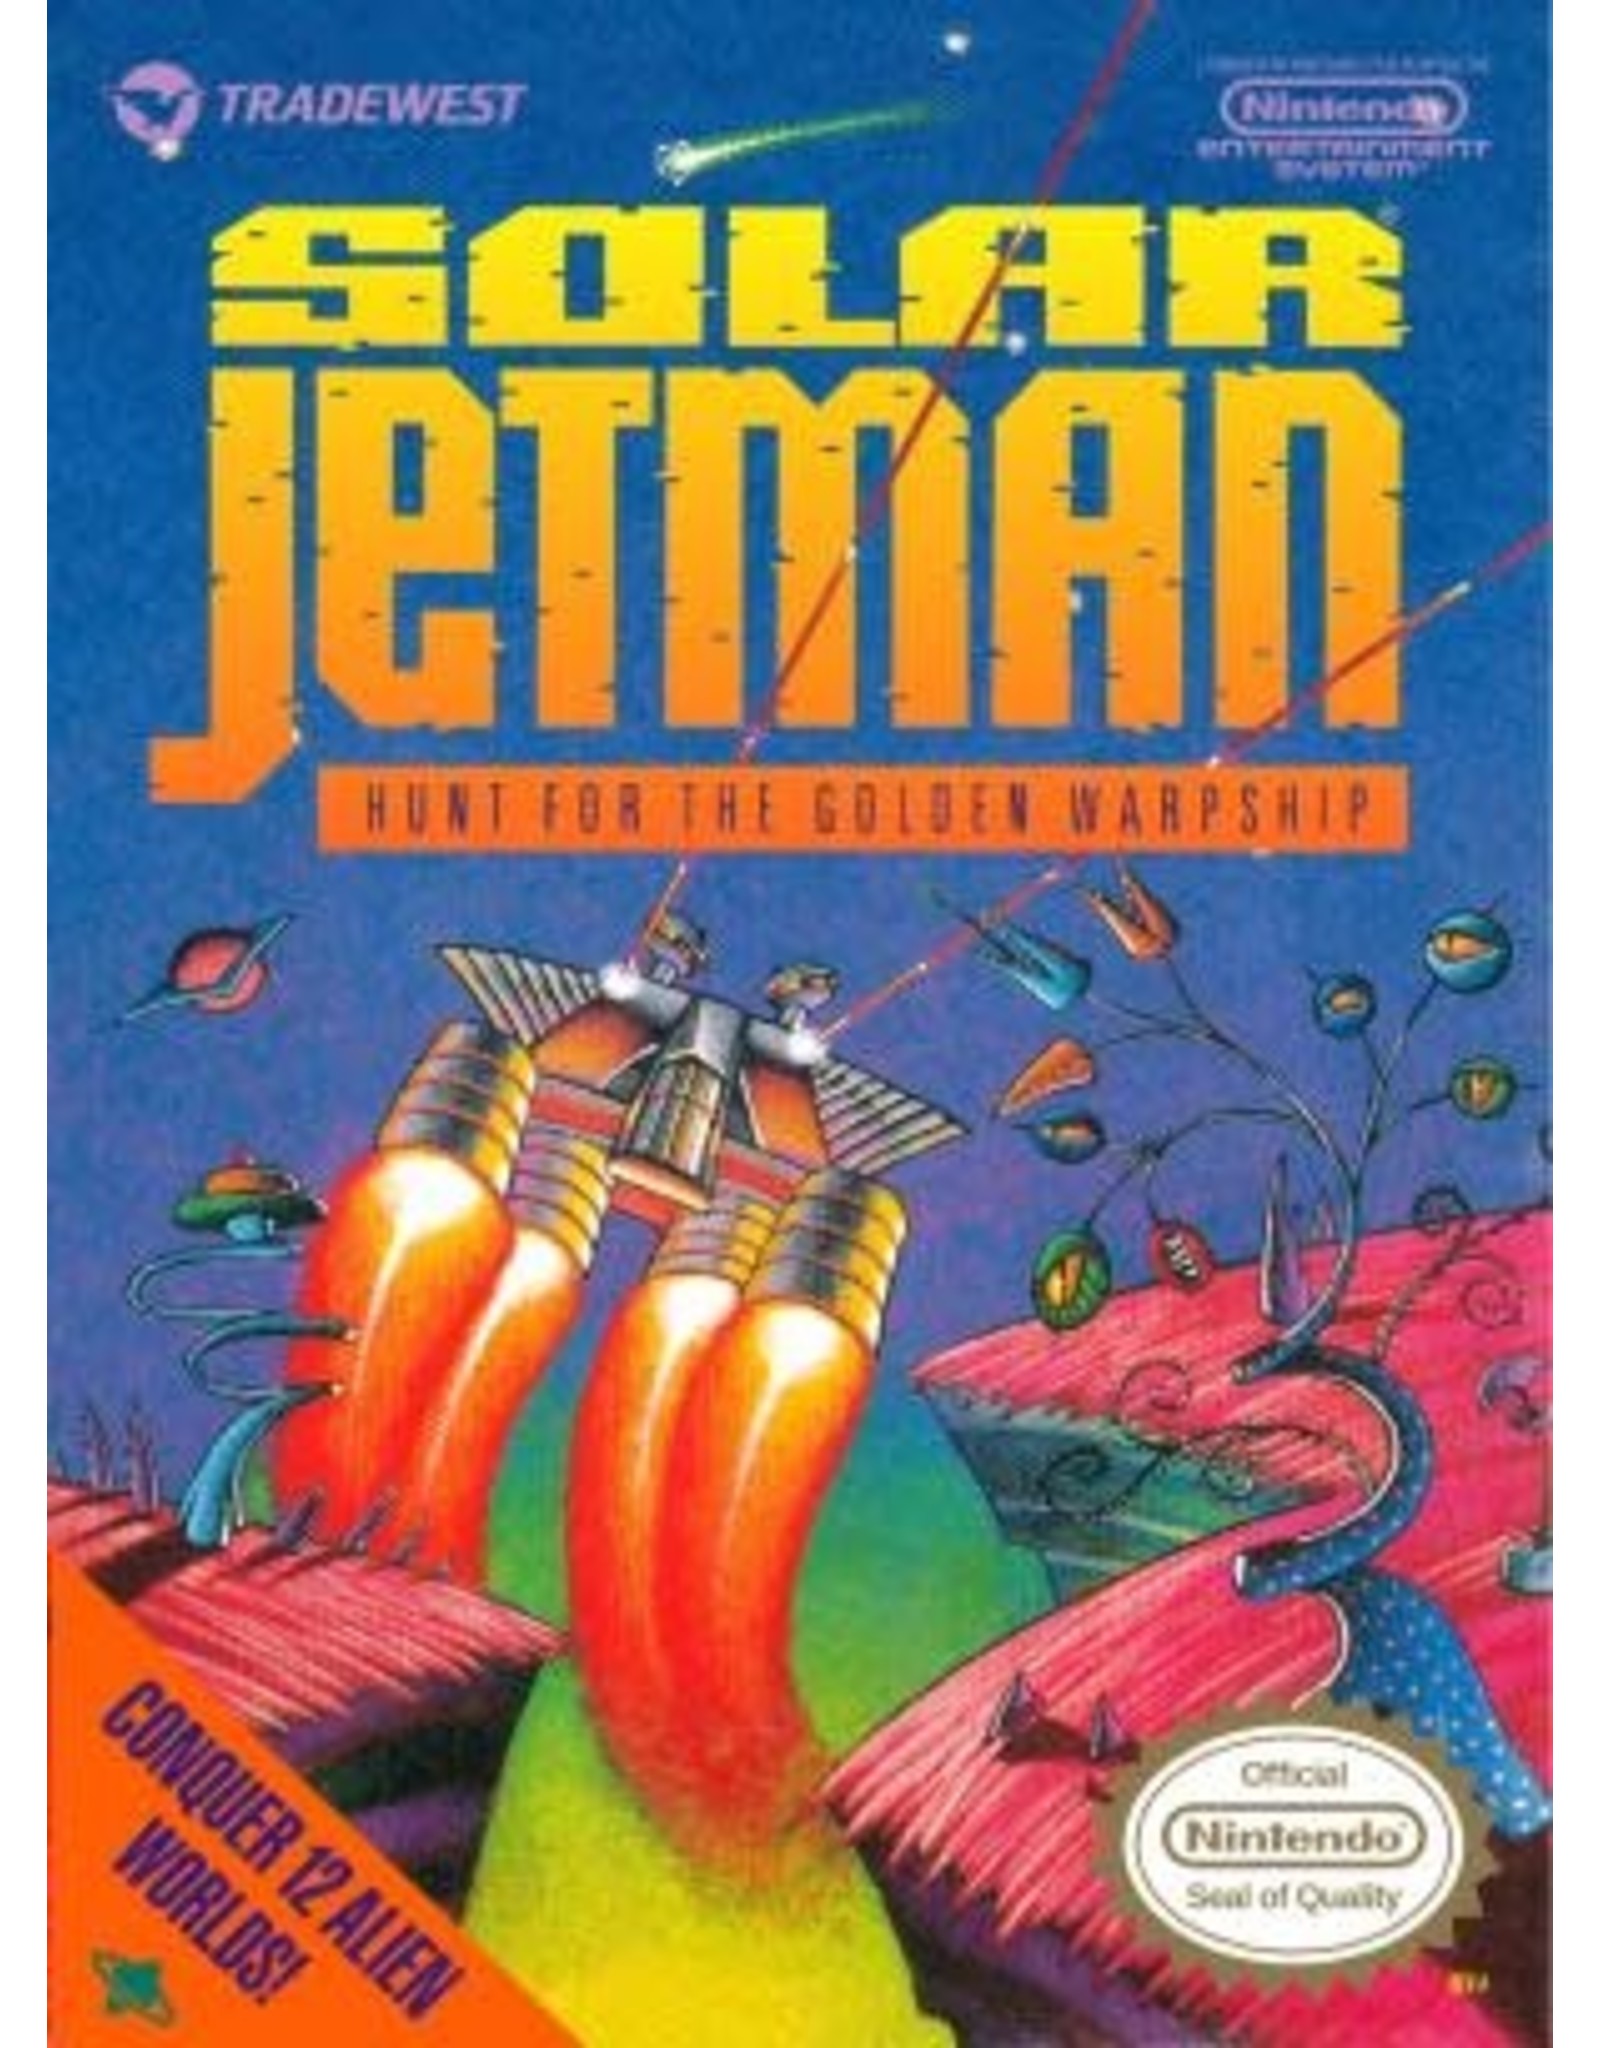 NES Solar Jetman (Cart Only)